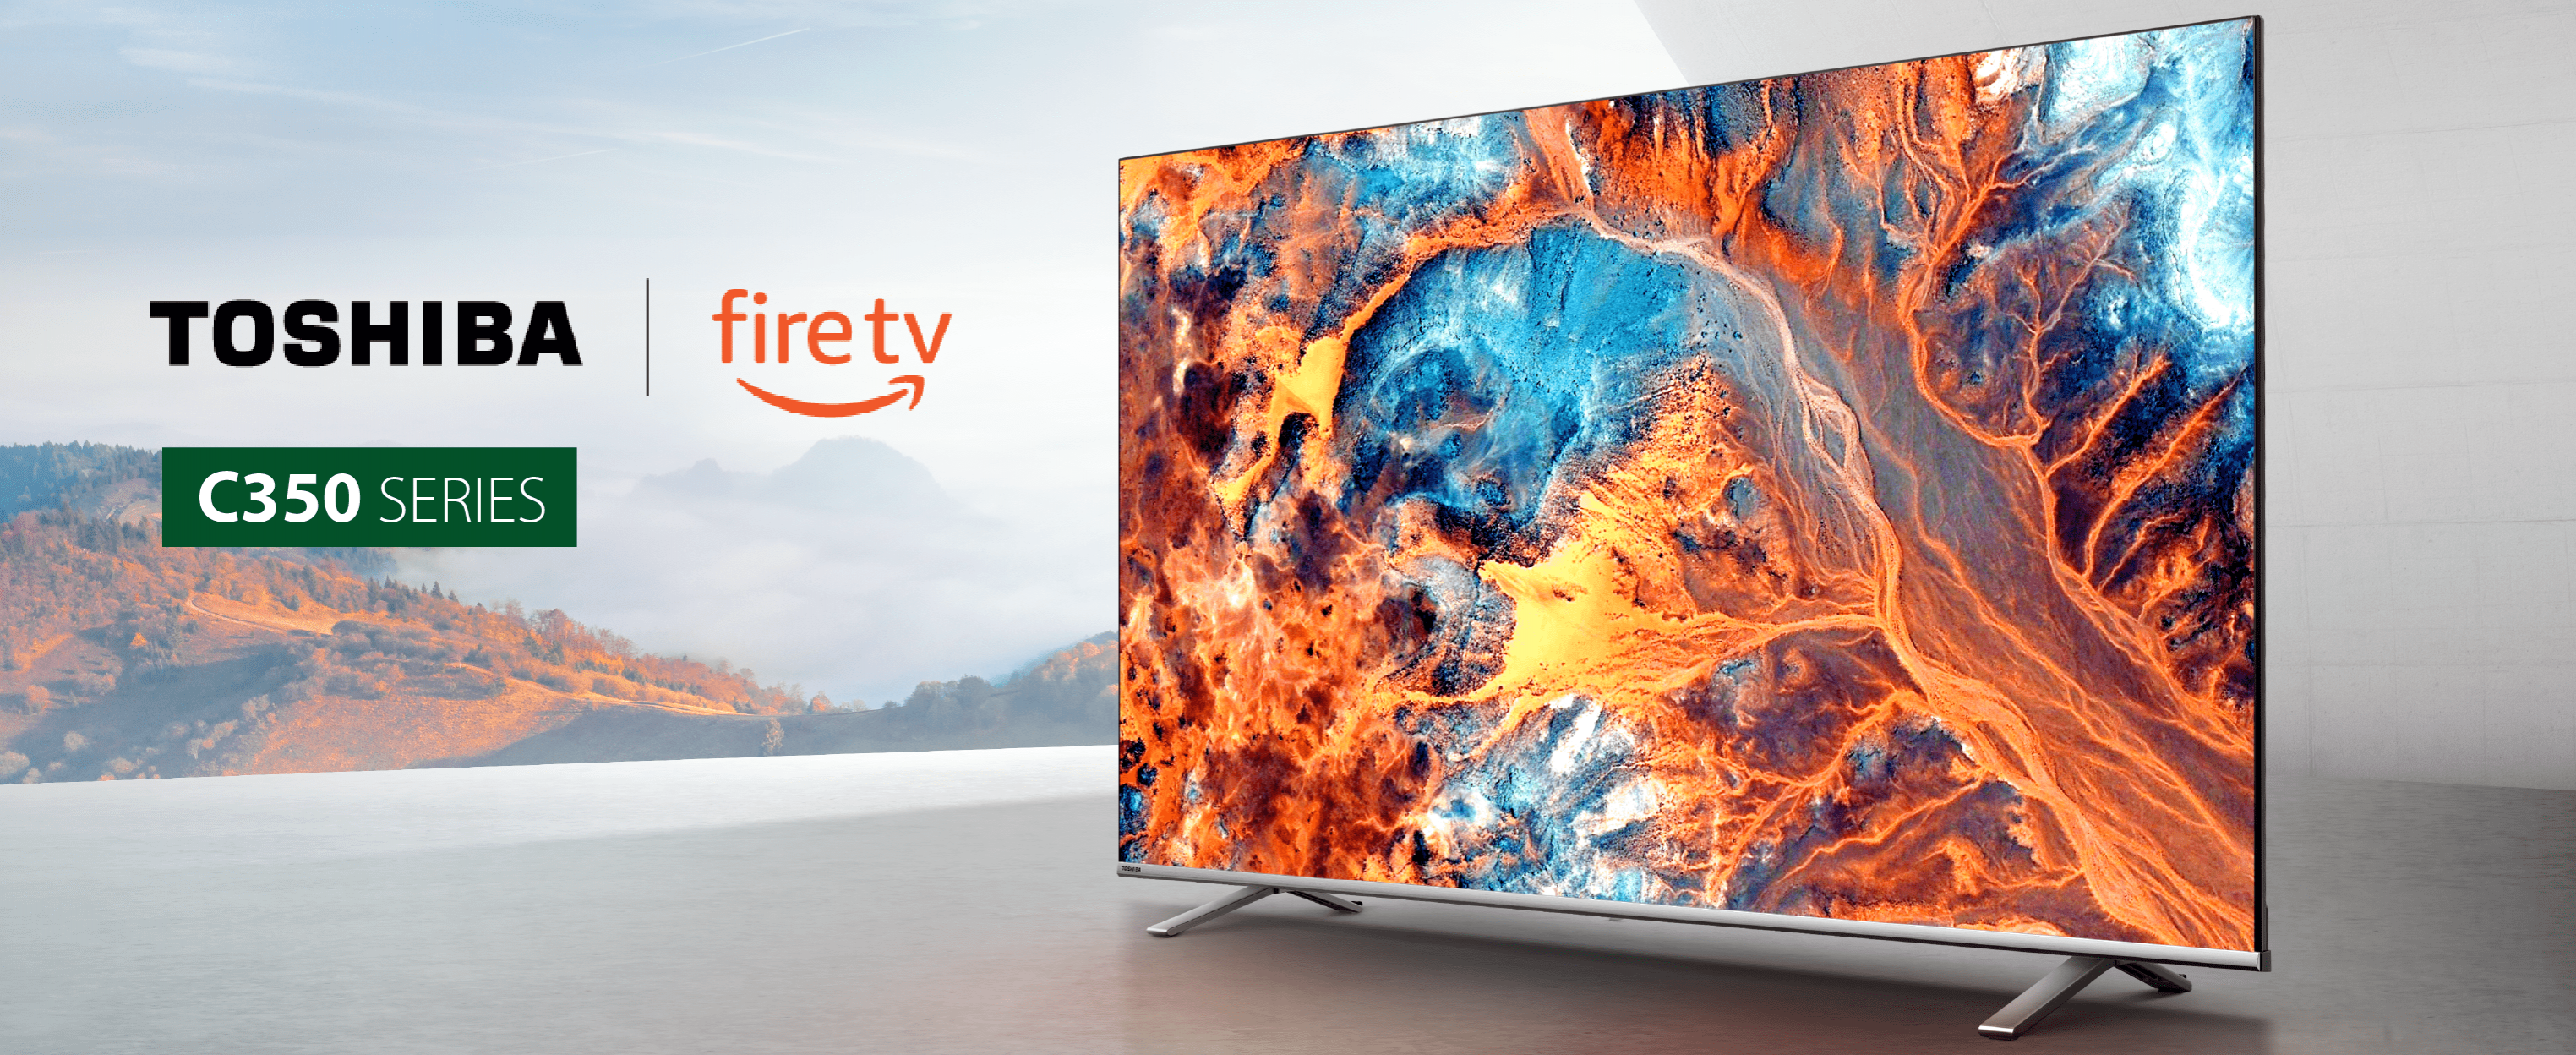 Fire TV 55 4-Series 4K UHD smart TV